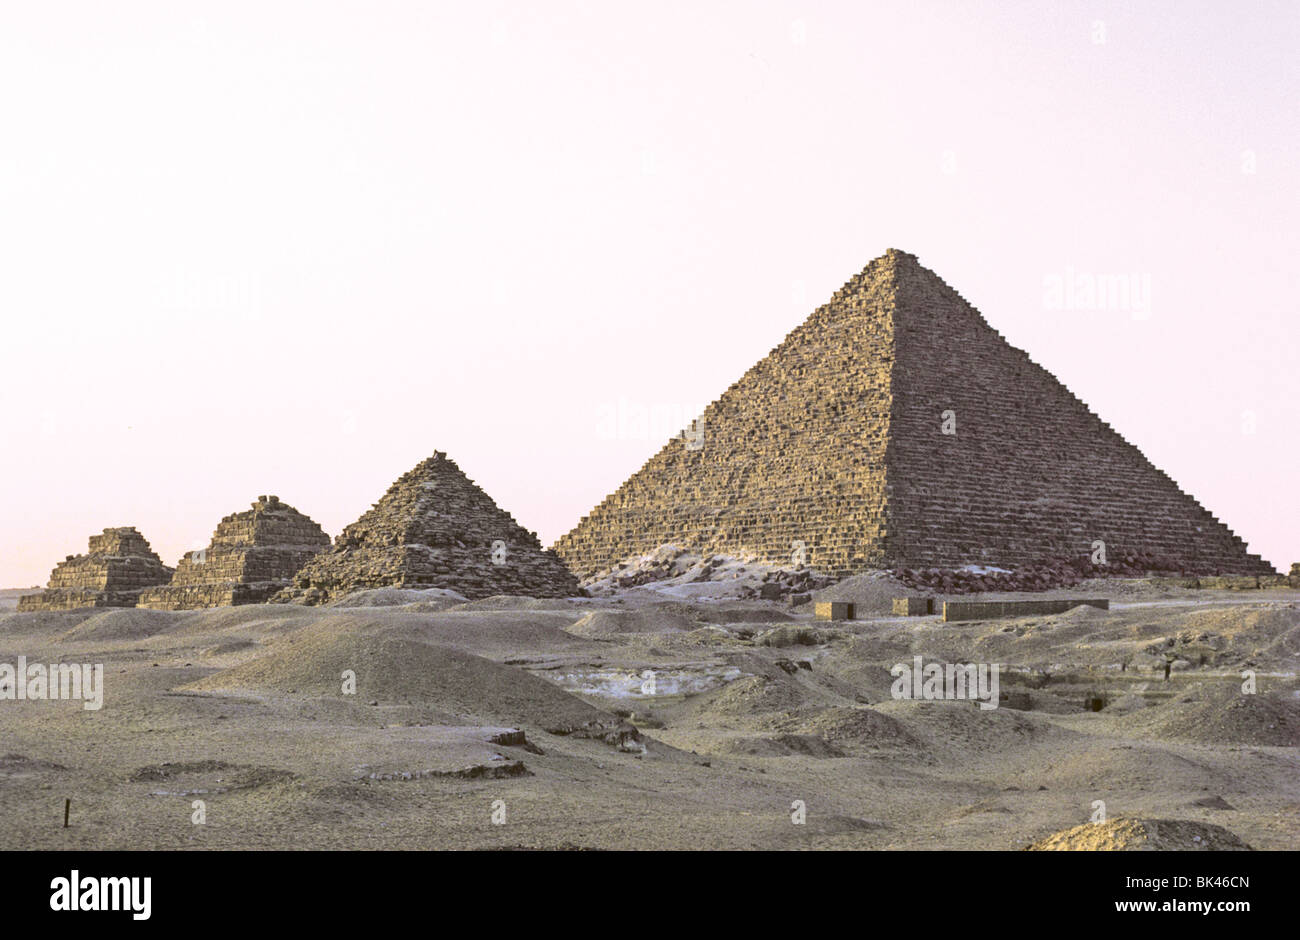 Pyramide des Mykerinos in Gizeh Ägypten mit drei kleineren Pyramiden (Pyramiden von Queens) im Vordergrund Stockfoto